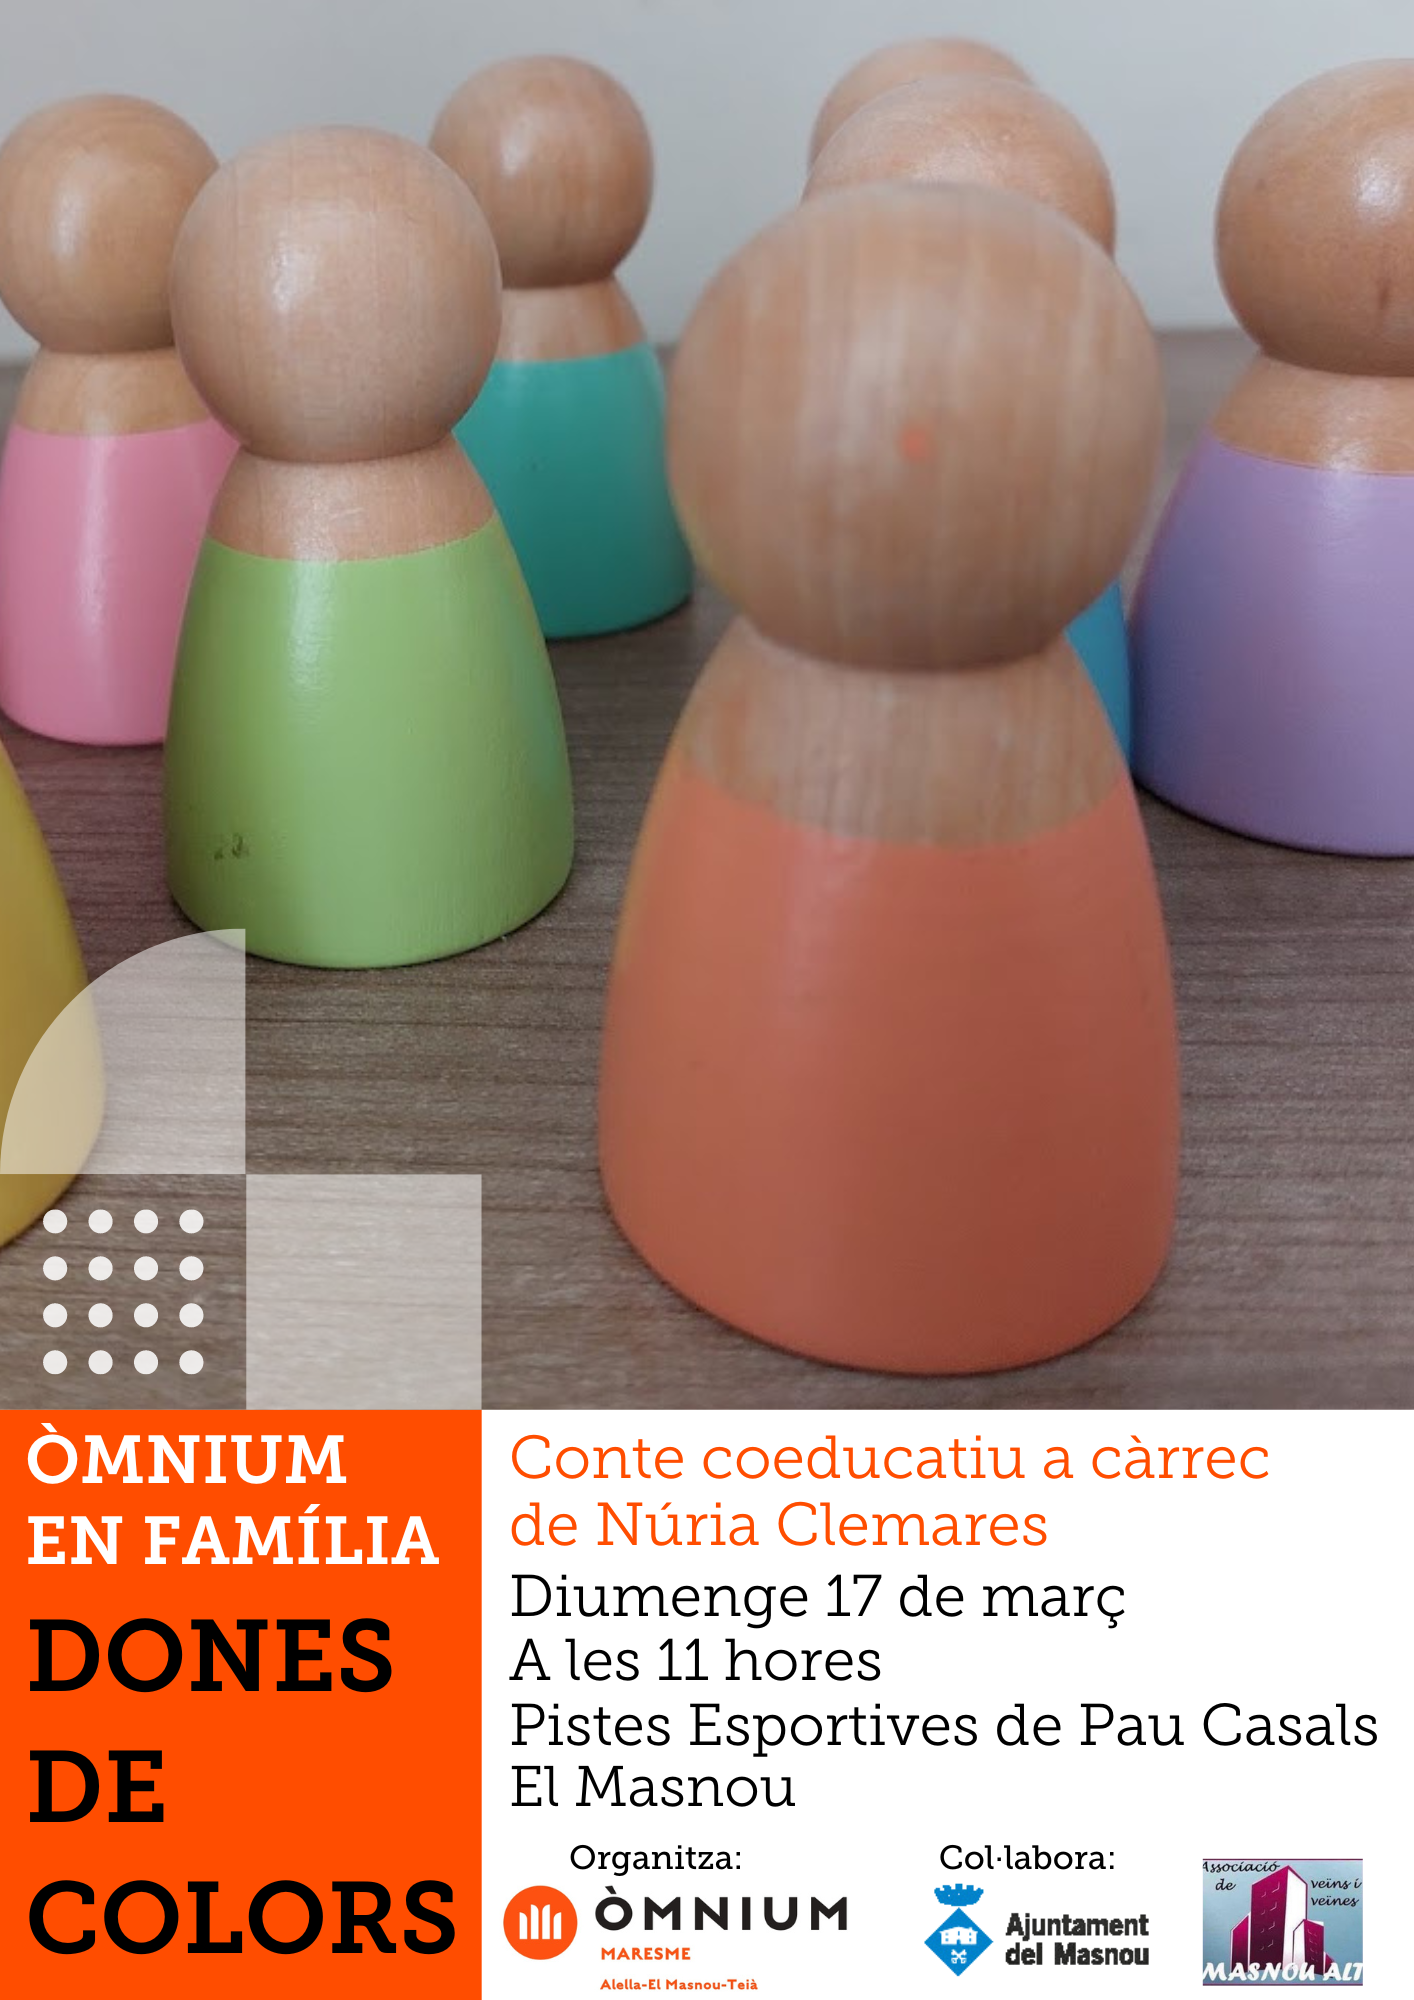 Òmnium en família: 'Dones de colors', conte coeducatiu, a càrrec de Núria Clemares